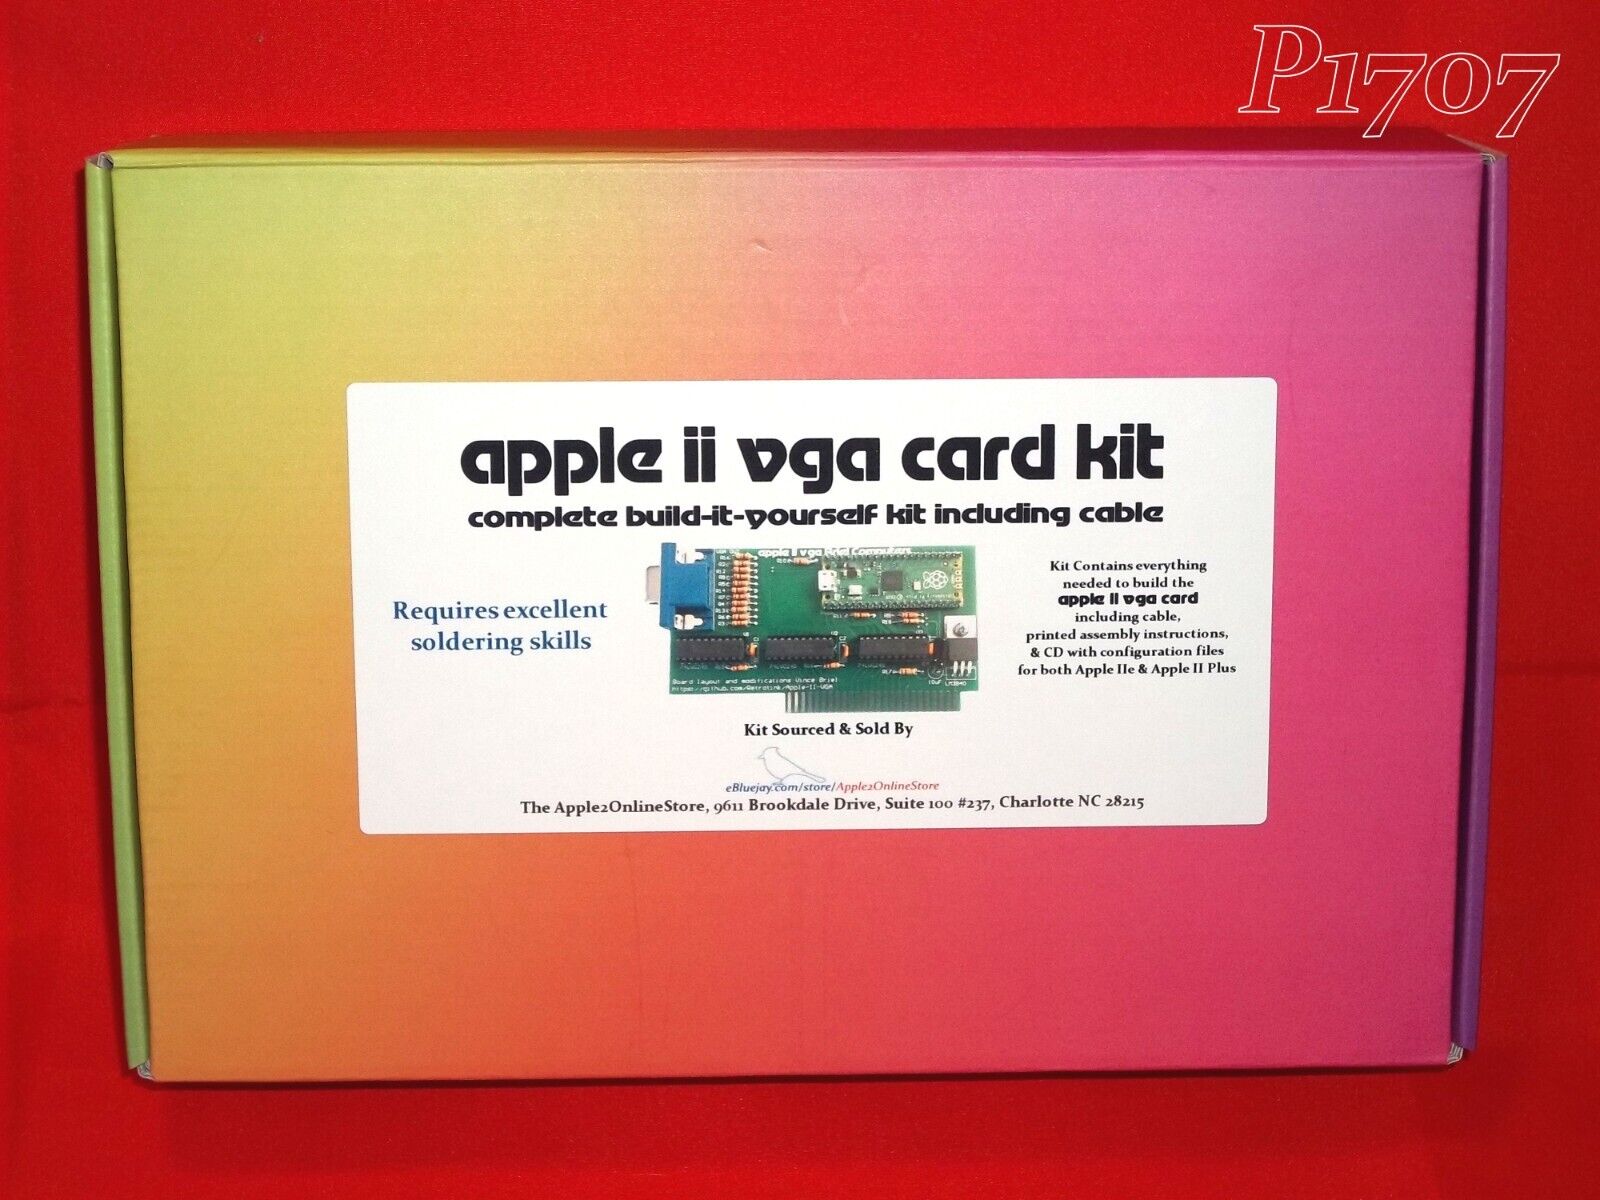 ✅ 🍎 Brand New Apple II VGA Card KIT - Apple II Plus & IIe - Complete Kit